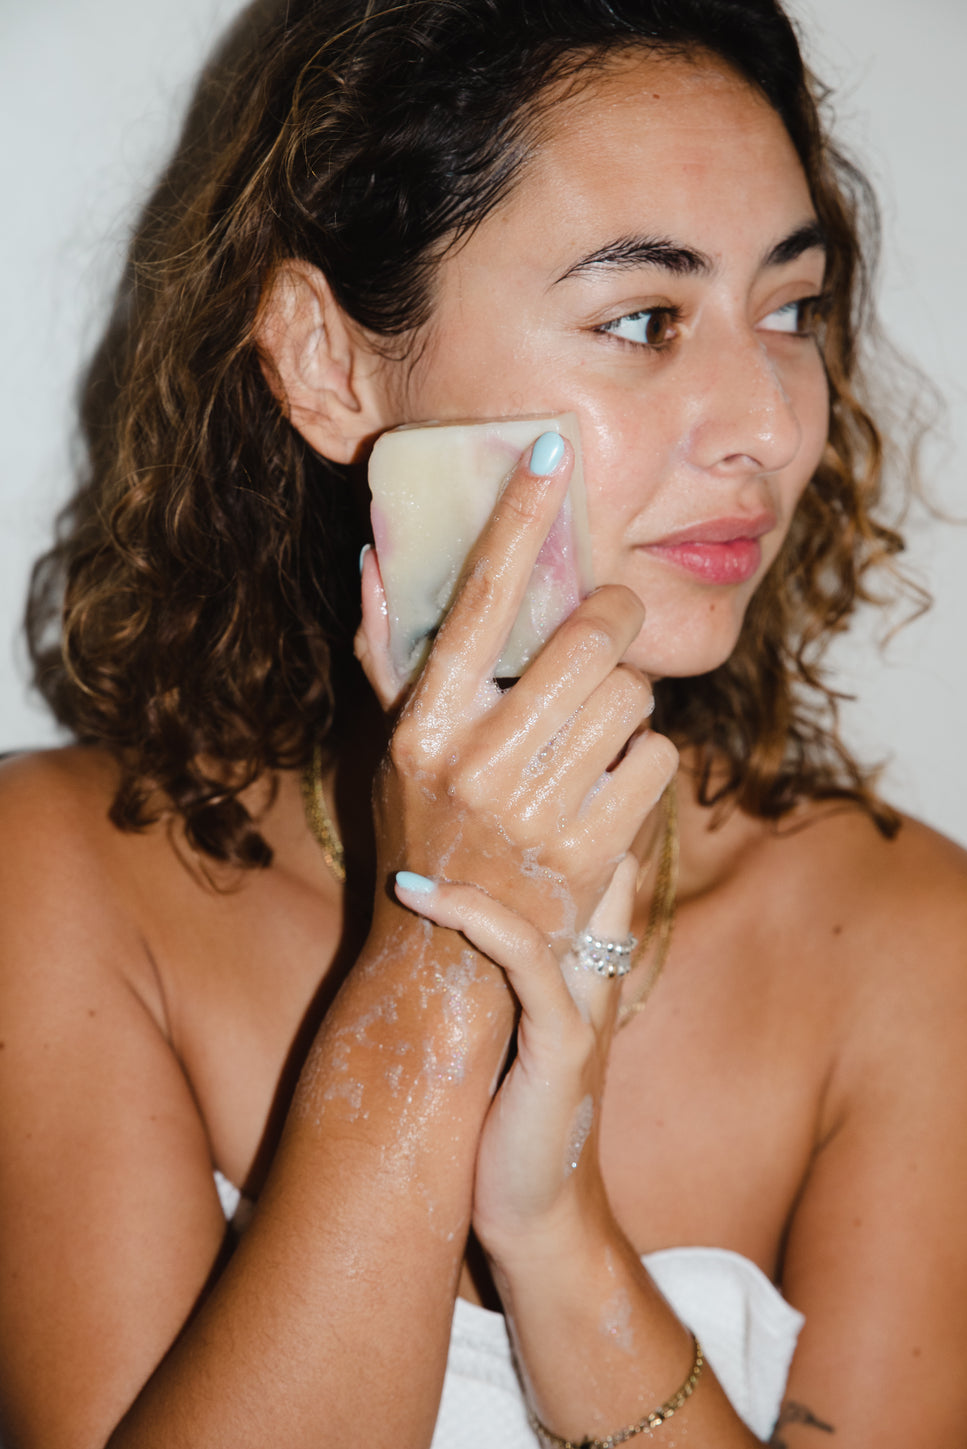 Best Smelling Soap for Women, Body Odor Soap